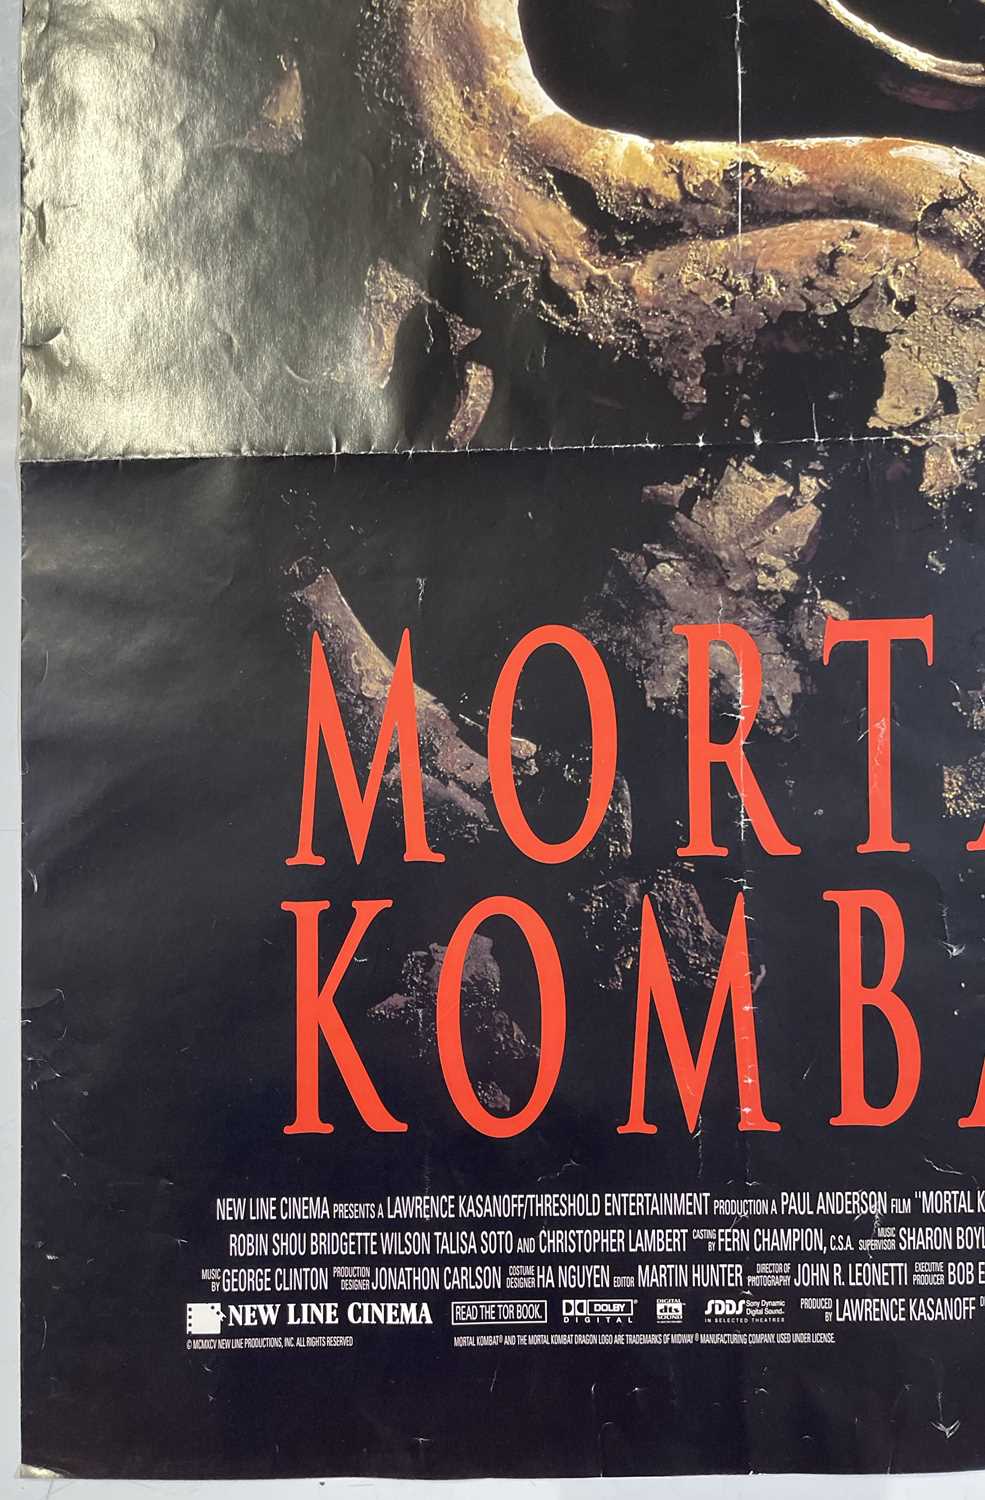 MORTAL KOMBAT (1995) - POSTER. - Image 2 of 6